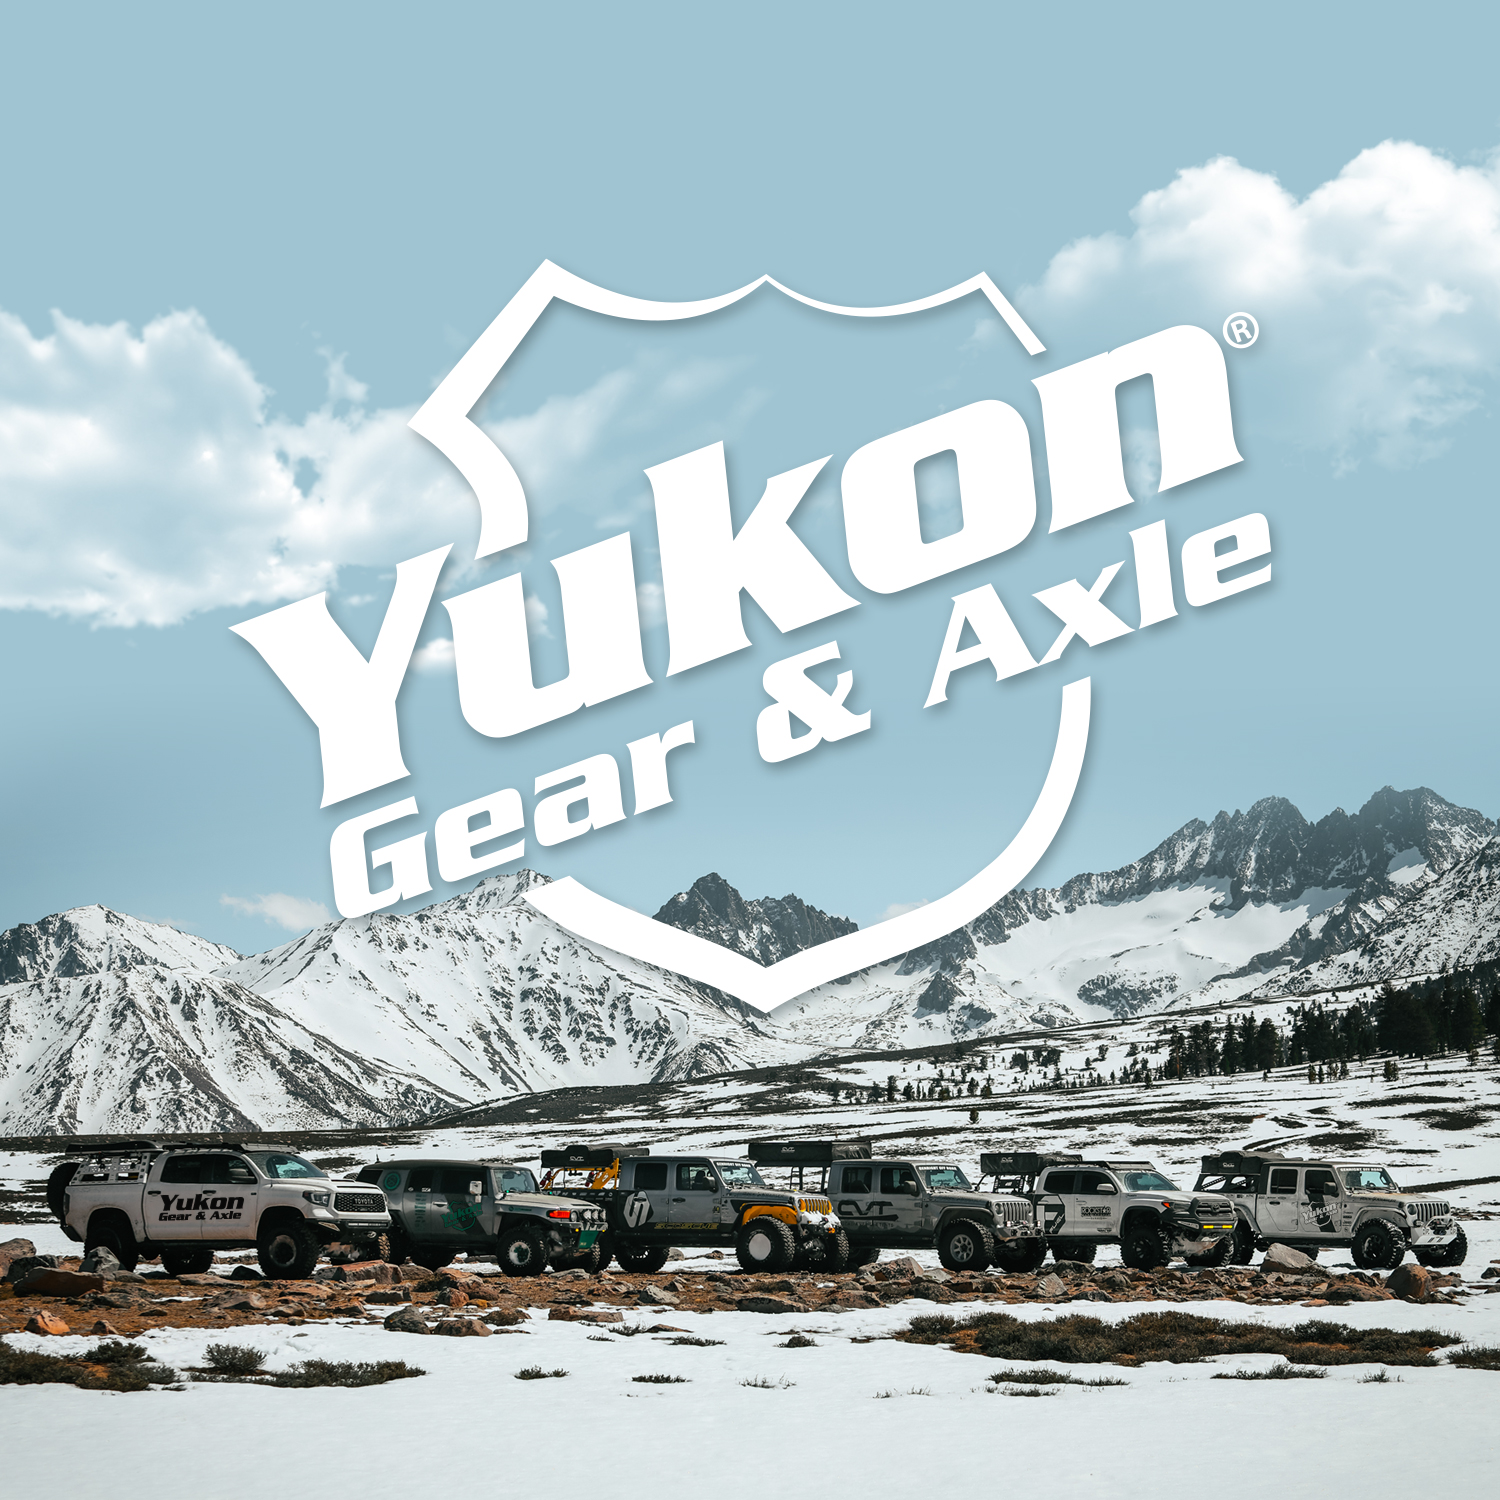 日本製・綿100% Yukon ギア車軸ツールとパーツ YK C8.75-C 並行輸入品